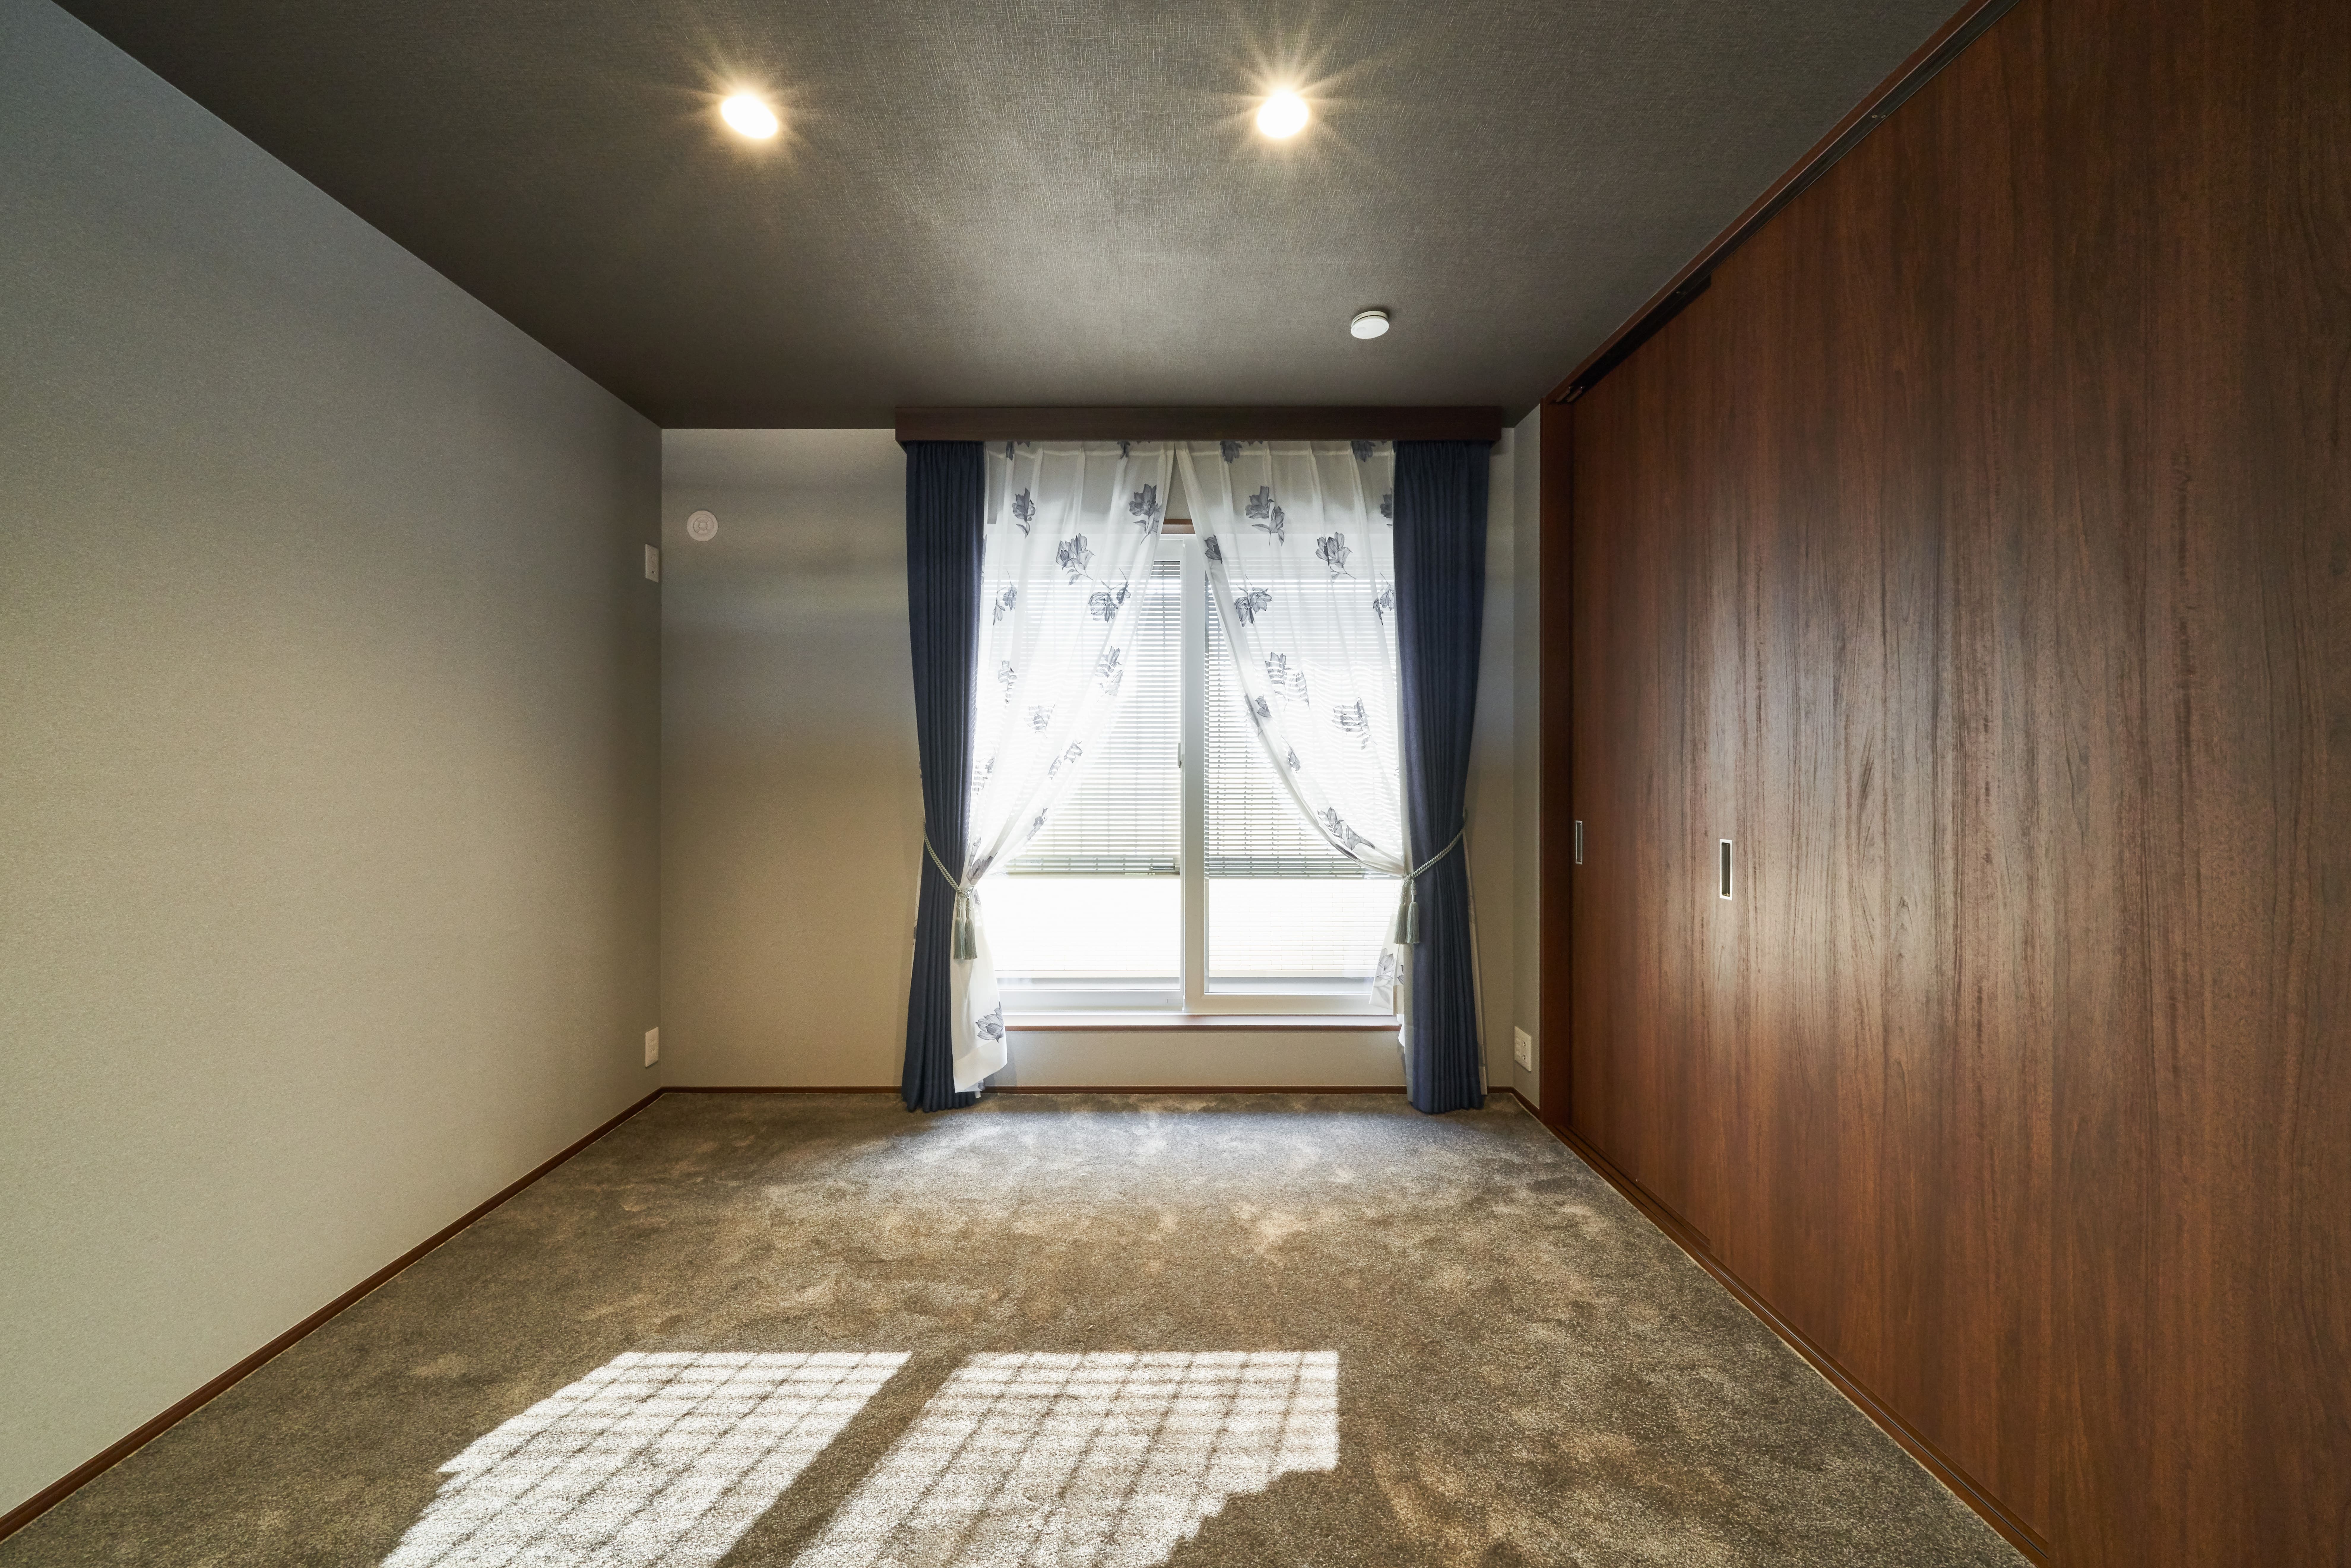 床・天井・壁をダークトーンでまとめ、高級感・重厚感のあるホテルライクな寝室に。電動窓シャッターで明るさ調節も可能。